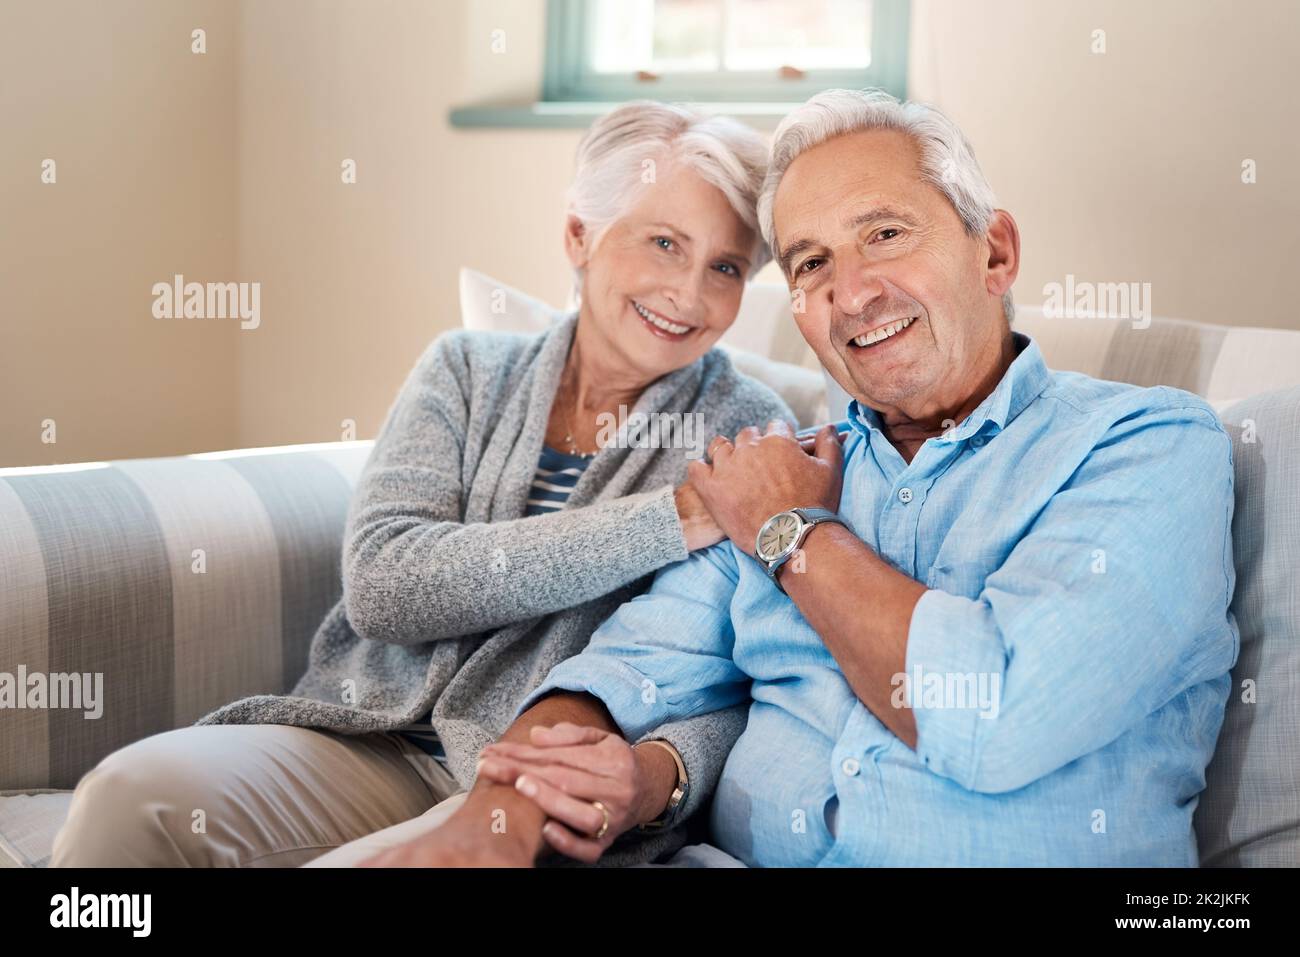 La vita ruota intorno alle persone che contano per te. Scatto di una coppia anziana che si rilassa insieme sul divano di casa. Foto Stock